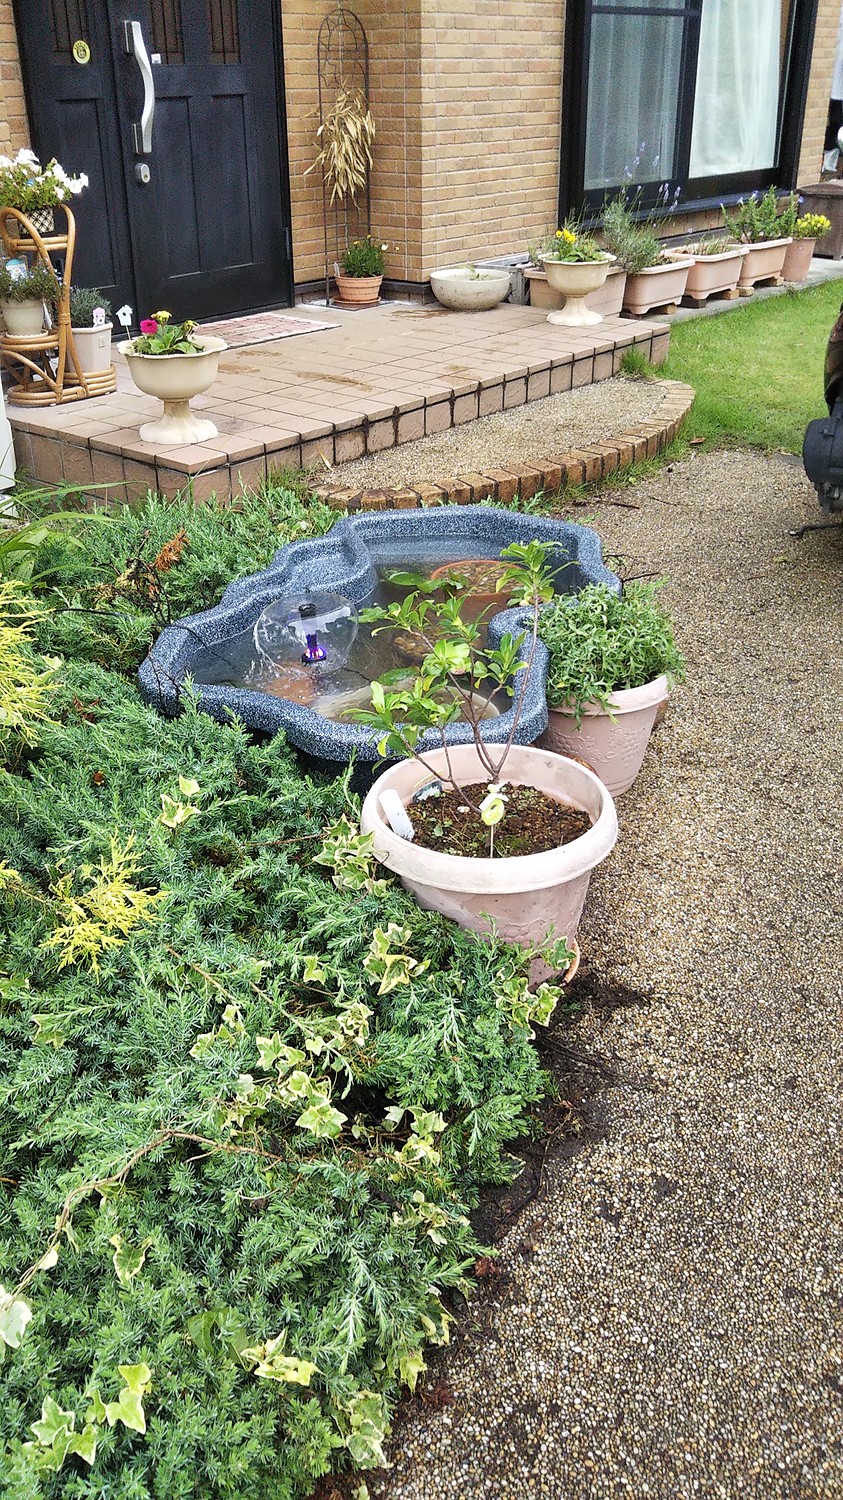 ゼンスイ なごみ池 M 30L (庭園埋め込みタイプ) - 庭、ガーデニング